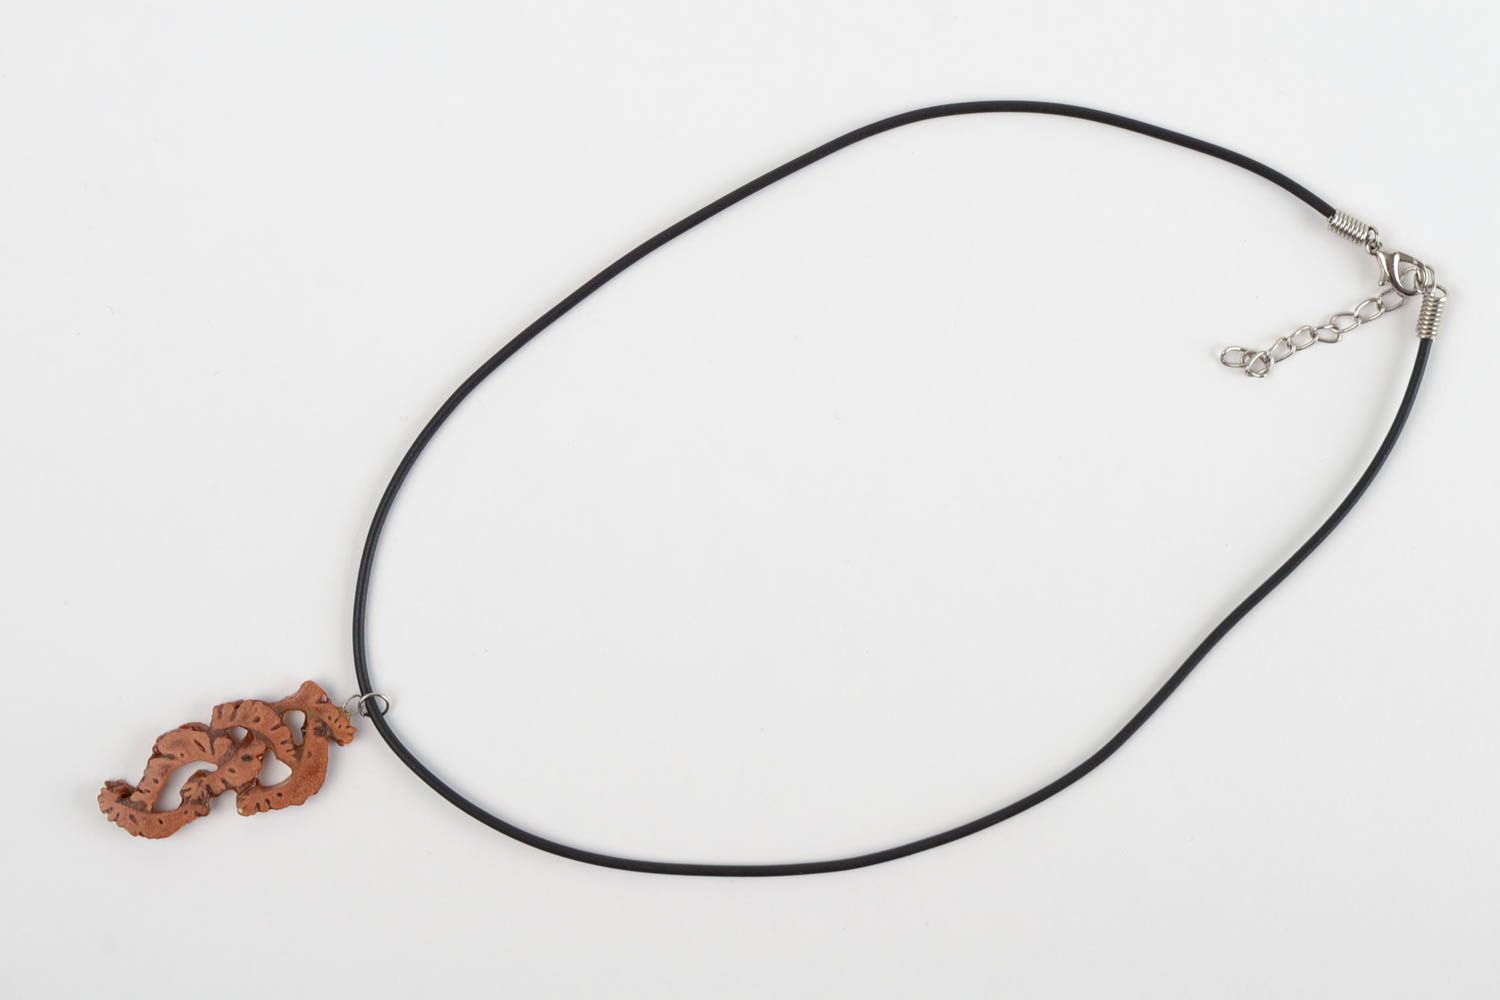 Кулон на шею кулон ручной работы эко украшение из персиковых косточек резное фото 3